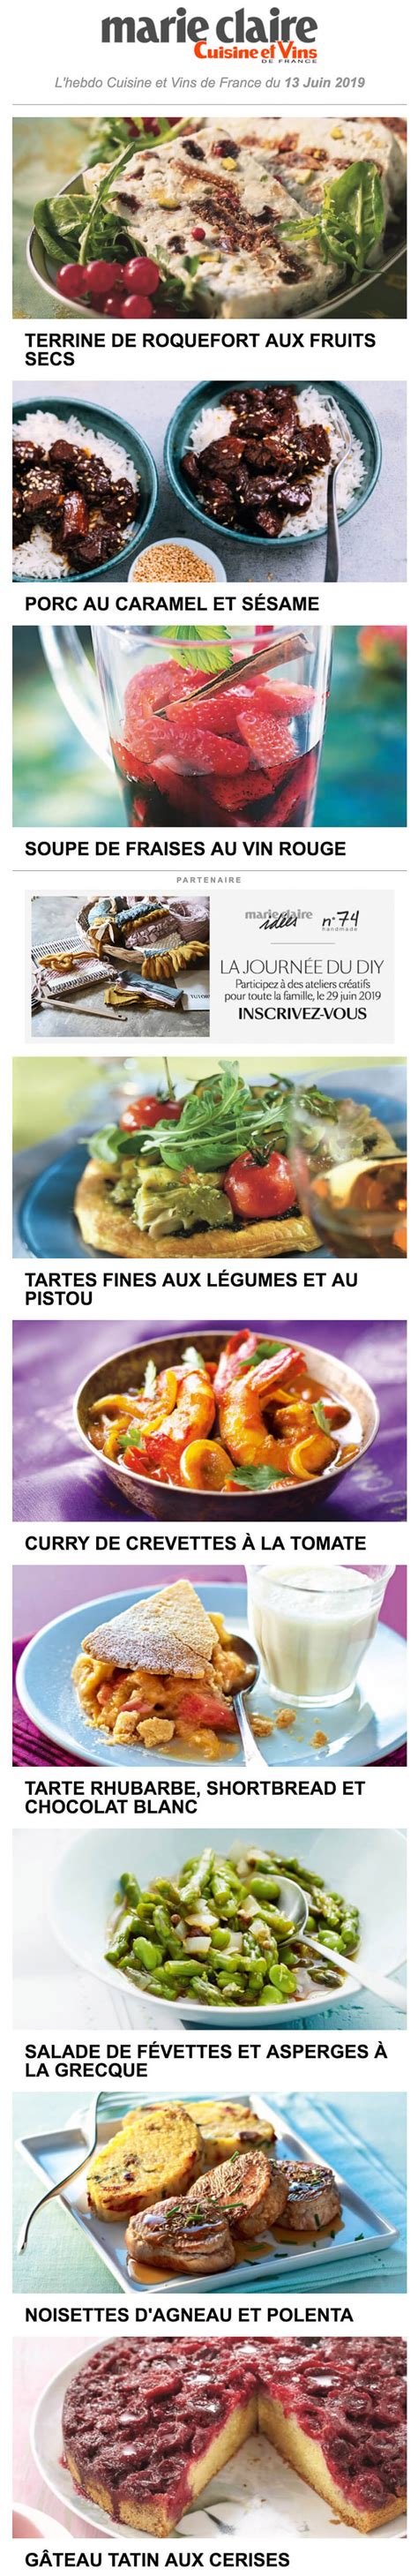 Newsletter Marie Claire Cuisine Et Vins De France Recevoir L